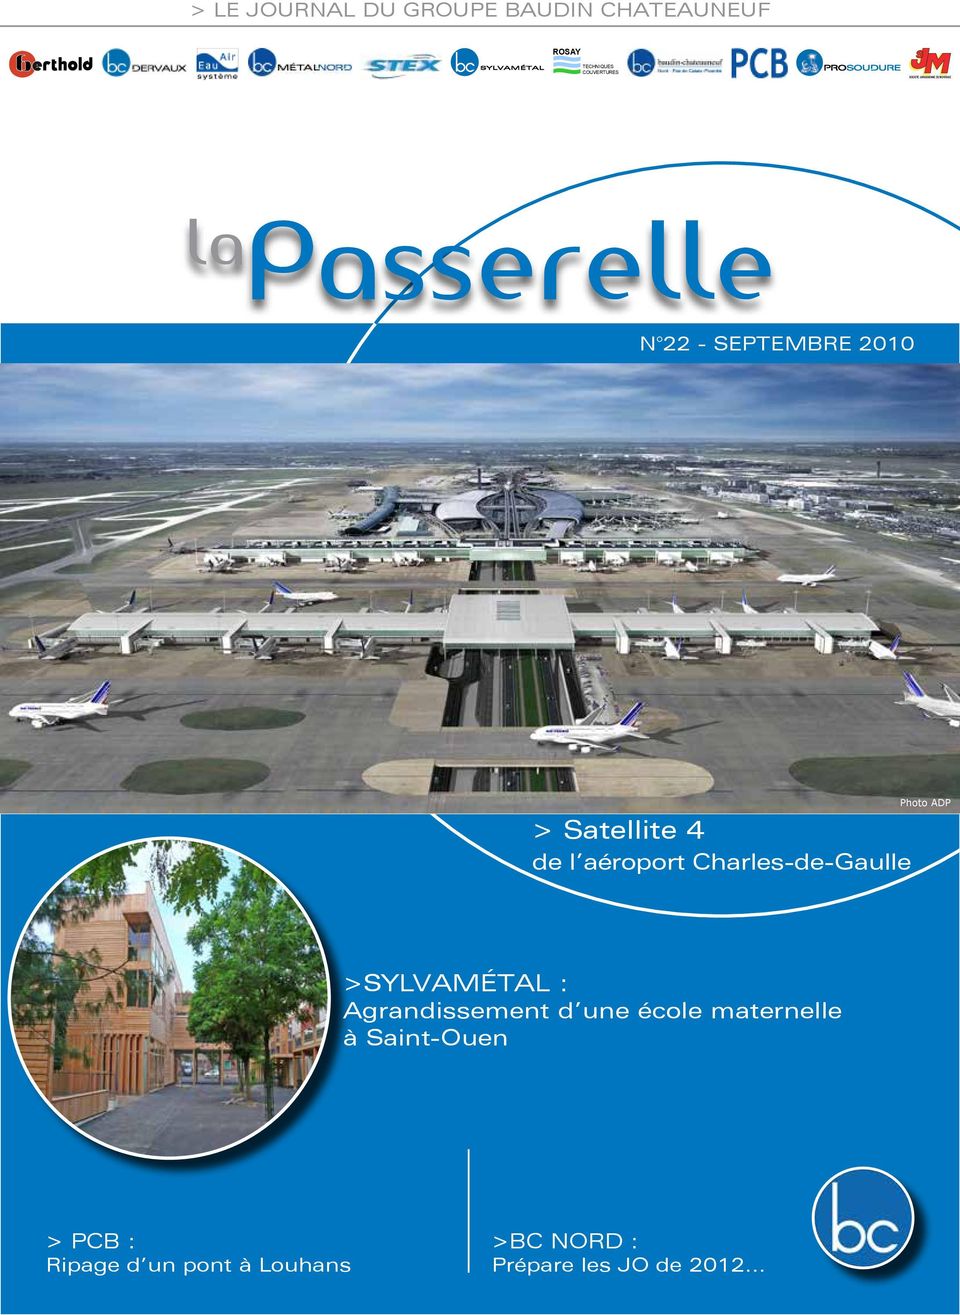 aéroport Charles-de-Gaulle Photo ADP >SYLvamétal : Agrandissement d une école